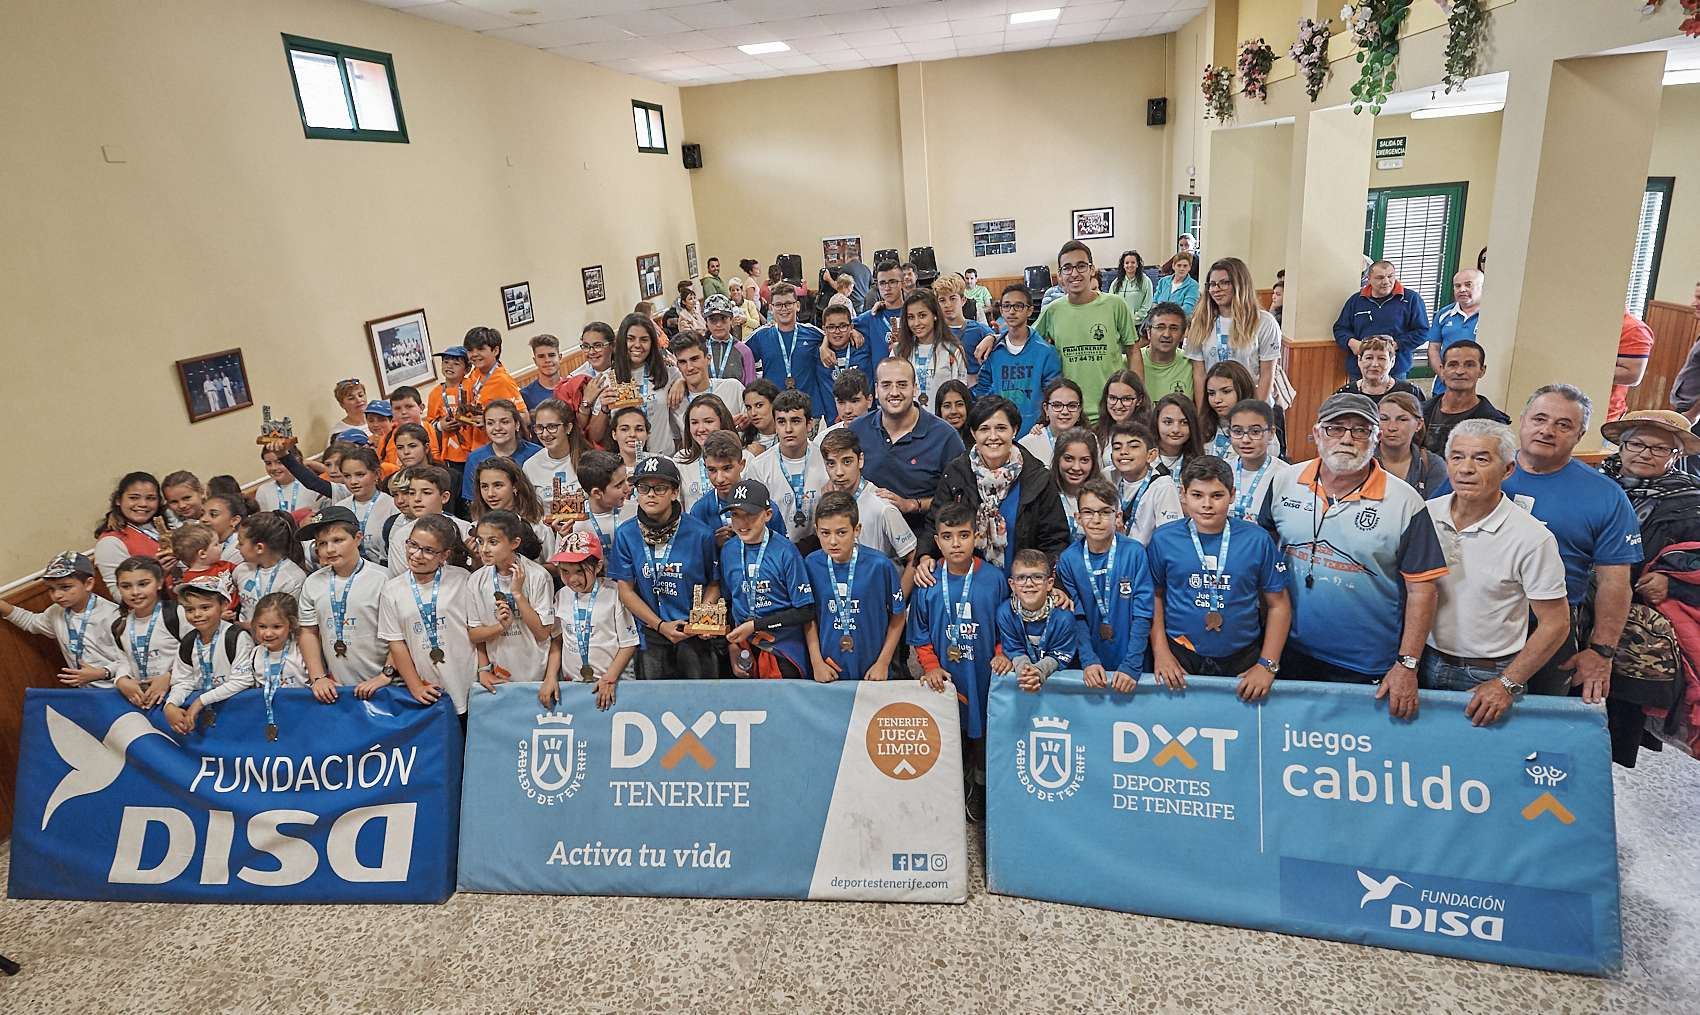 El Florida domina la final de bola canaria de los XXXI Juegos Cabildo -  Diario de Tenerife